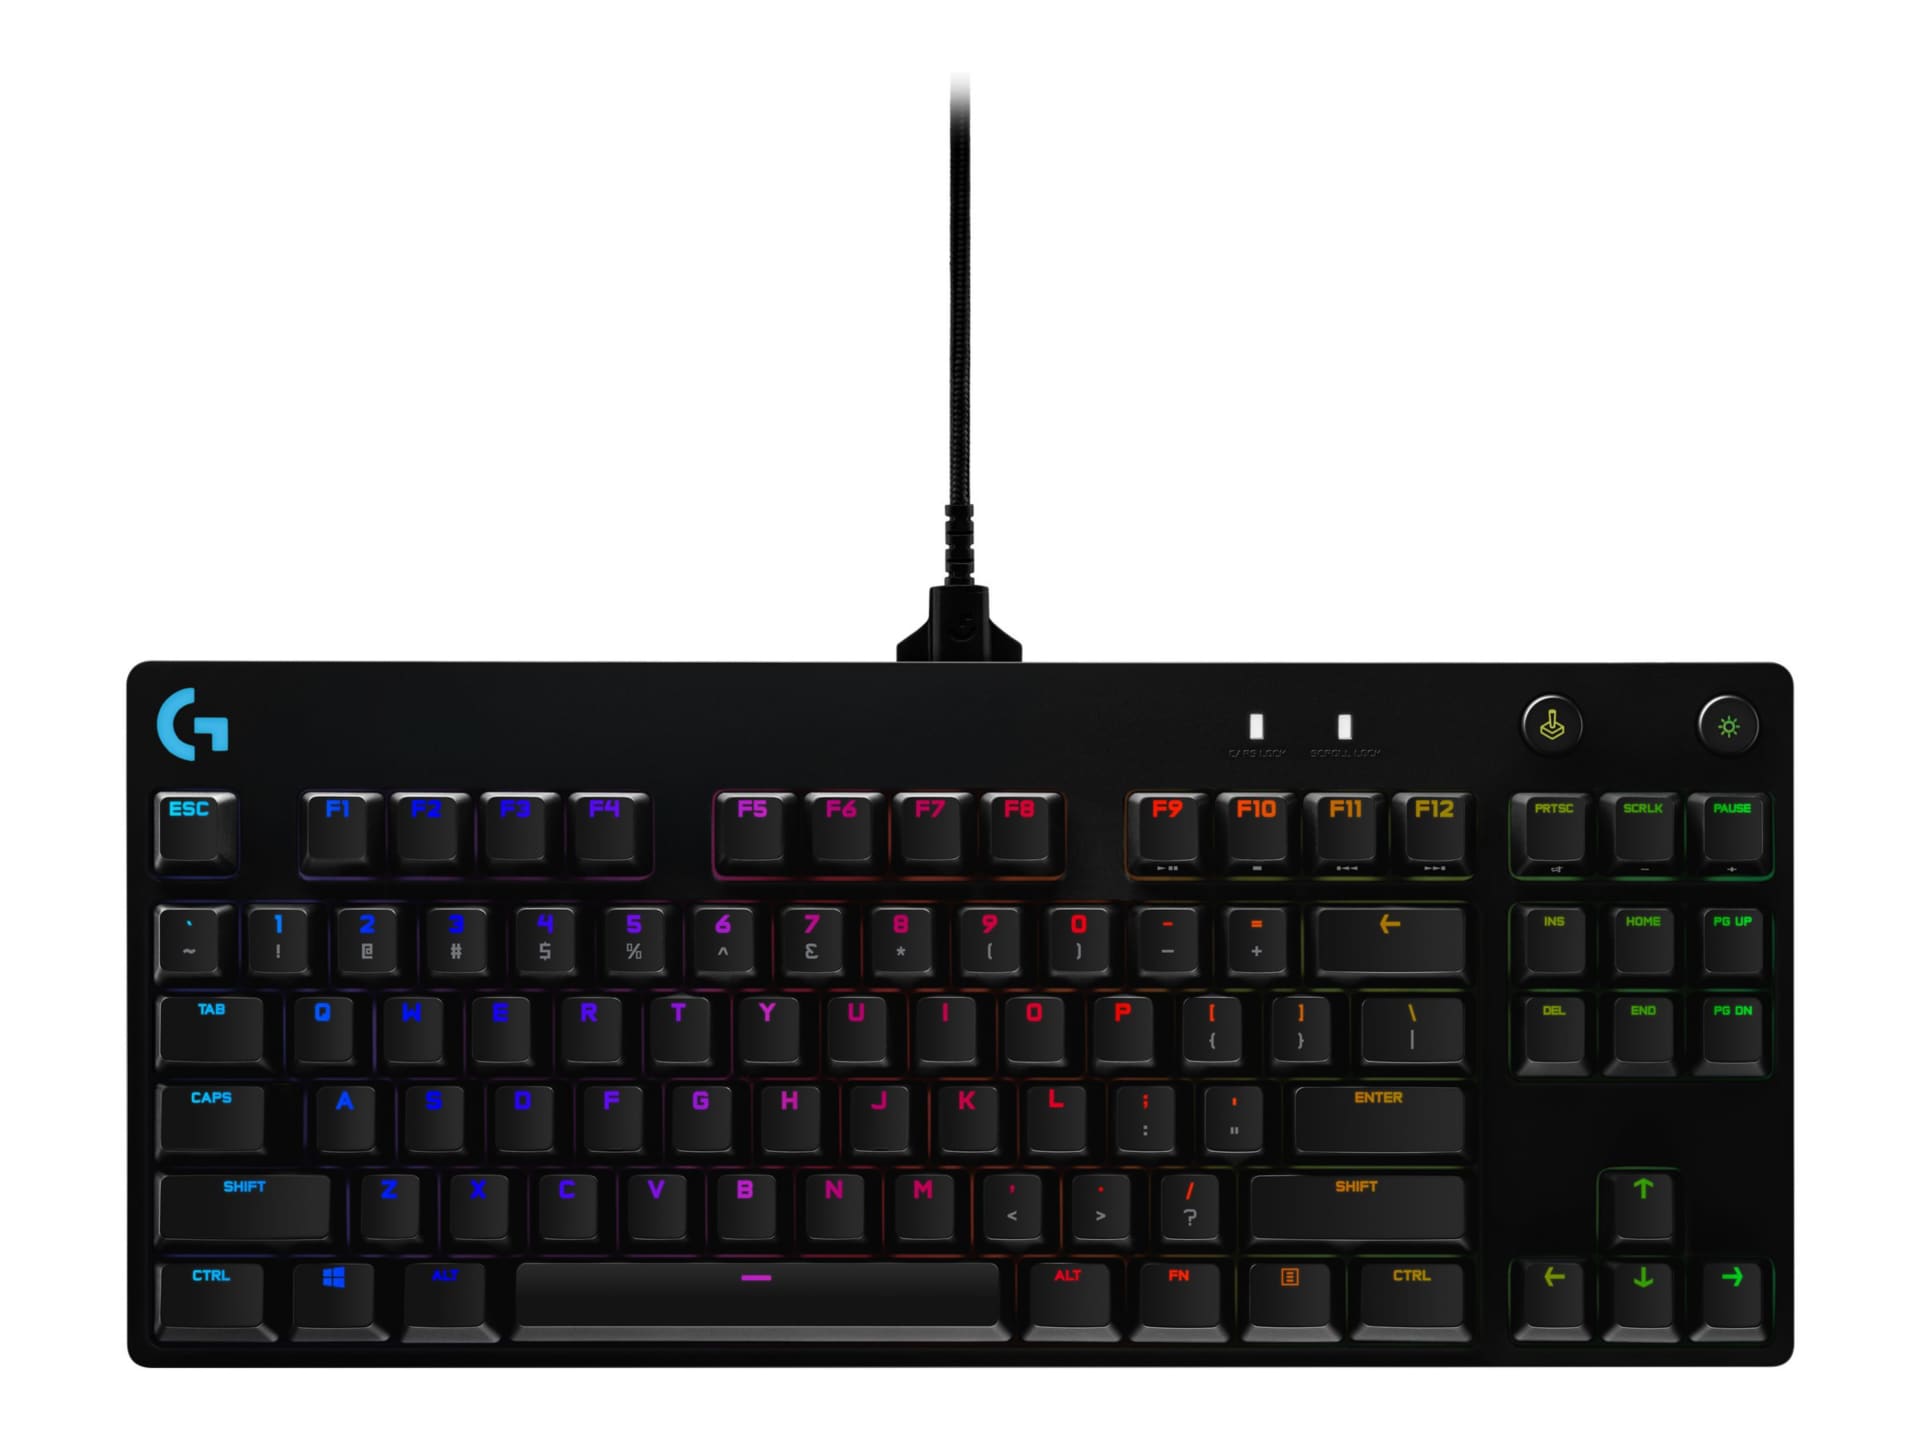 Logitech G Pro Mechanical Gaming Keyboard - keyboard - black - 920-009388 Keyboards -